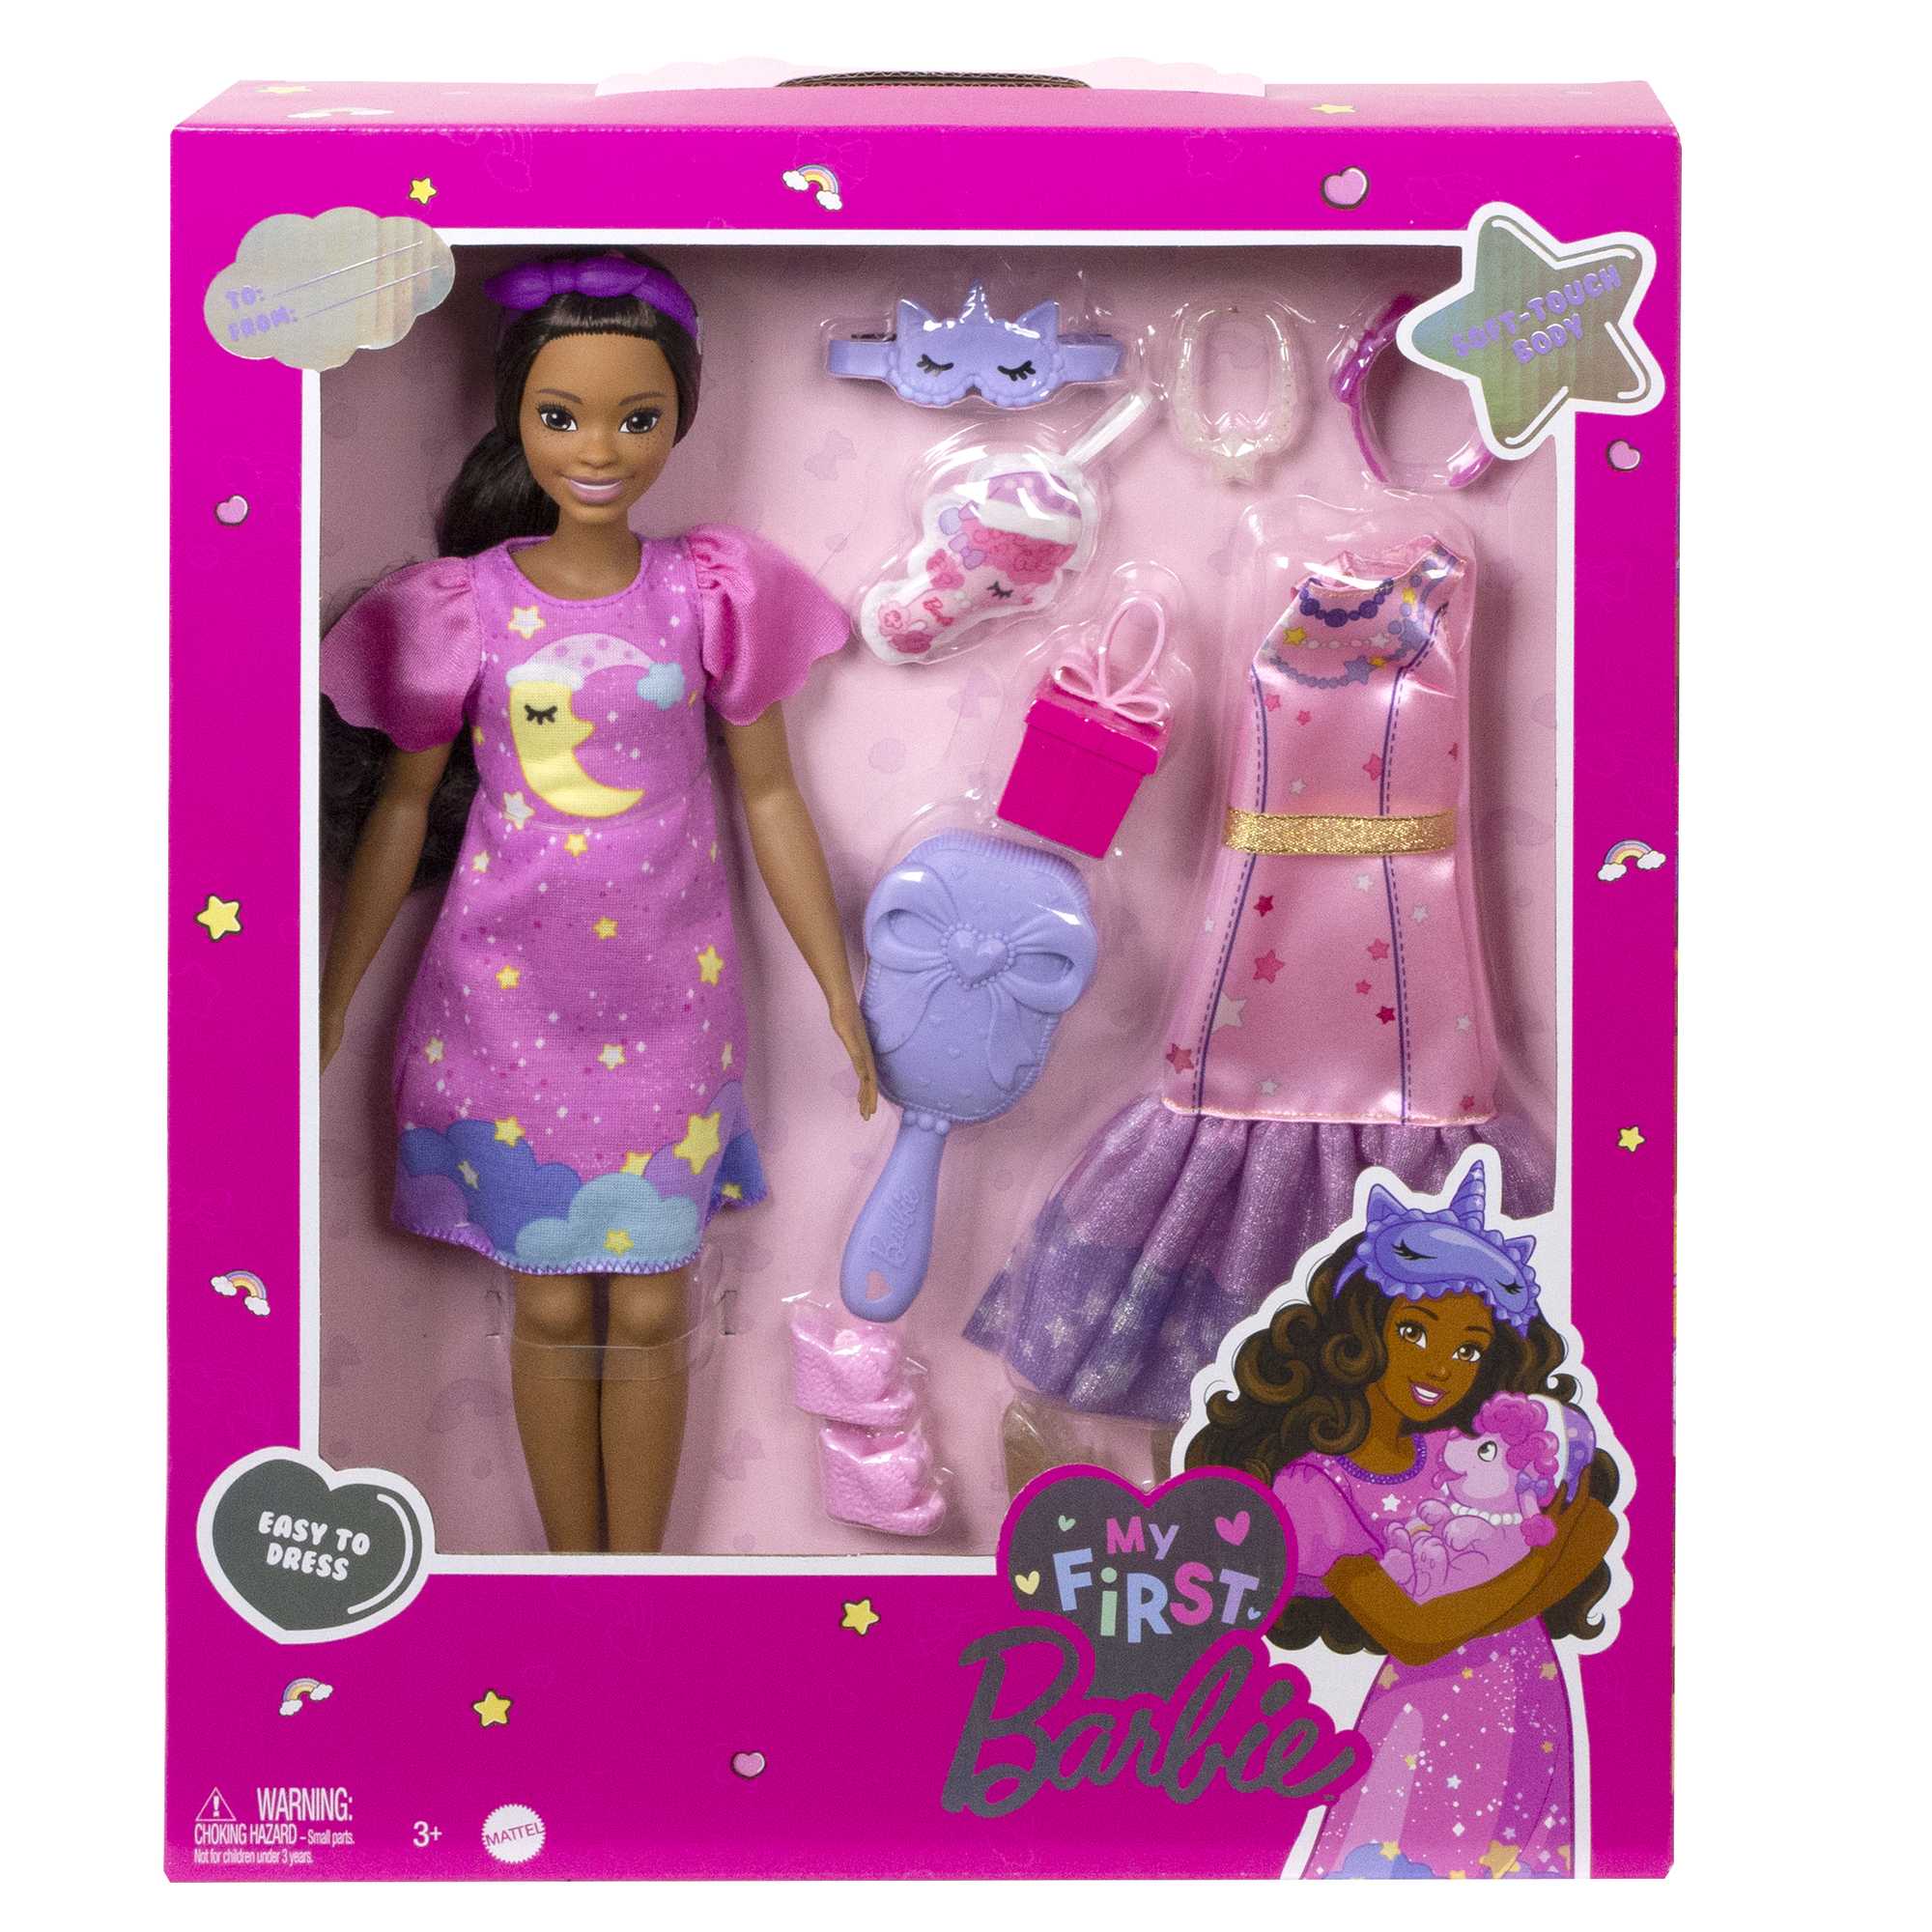 Barbie et ses accessoires de mode Mattel